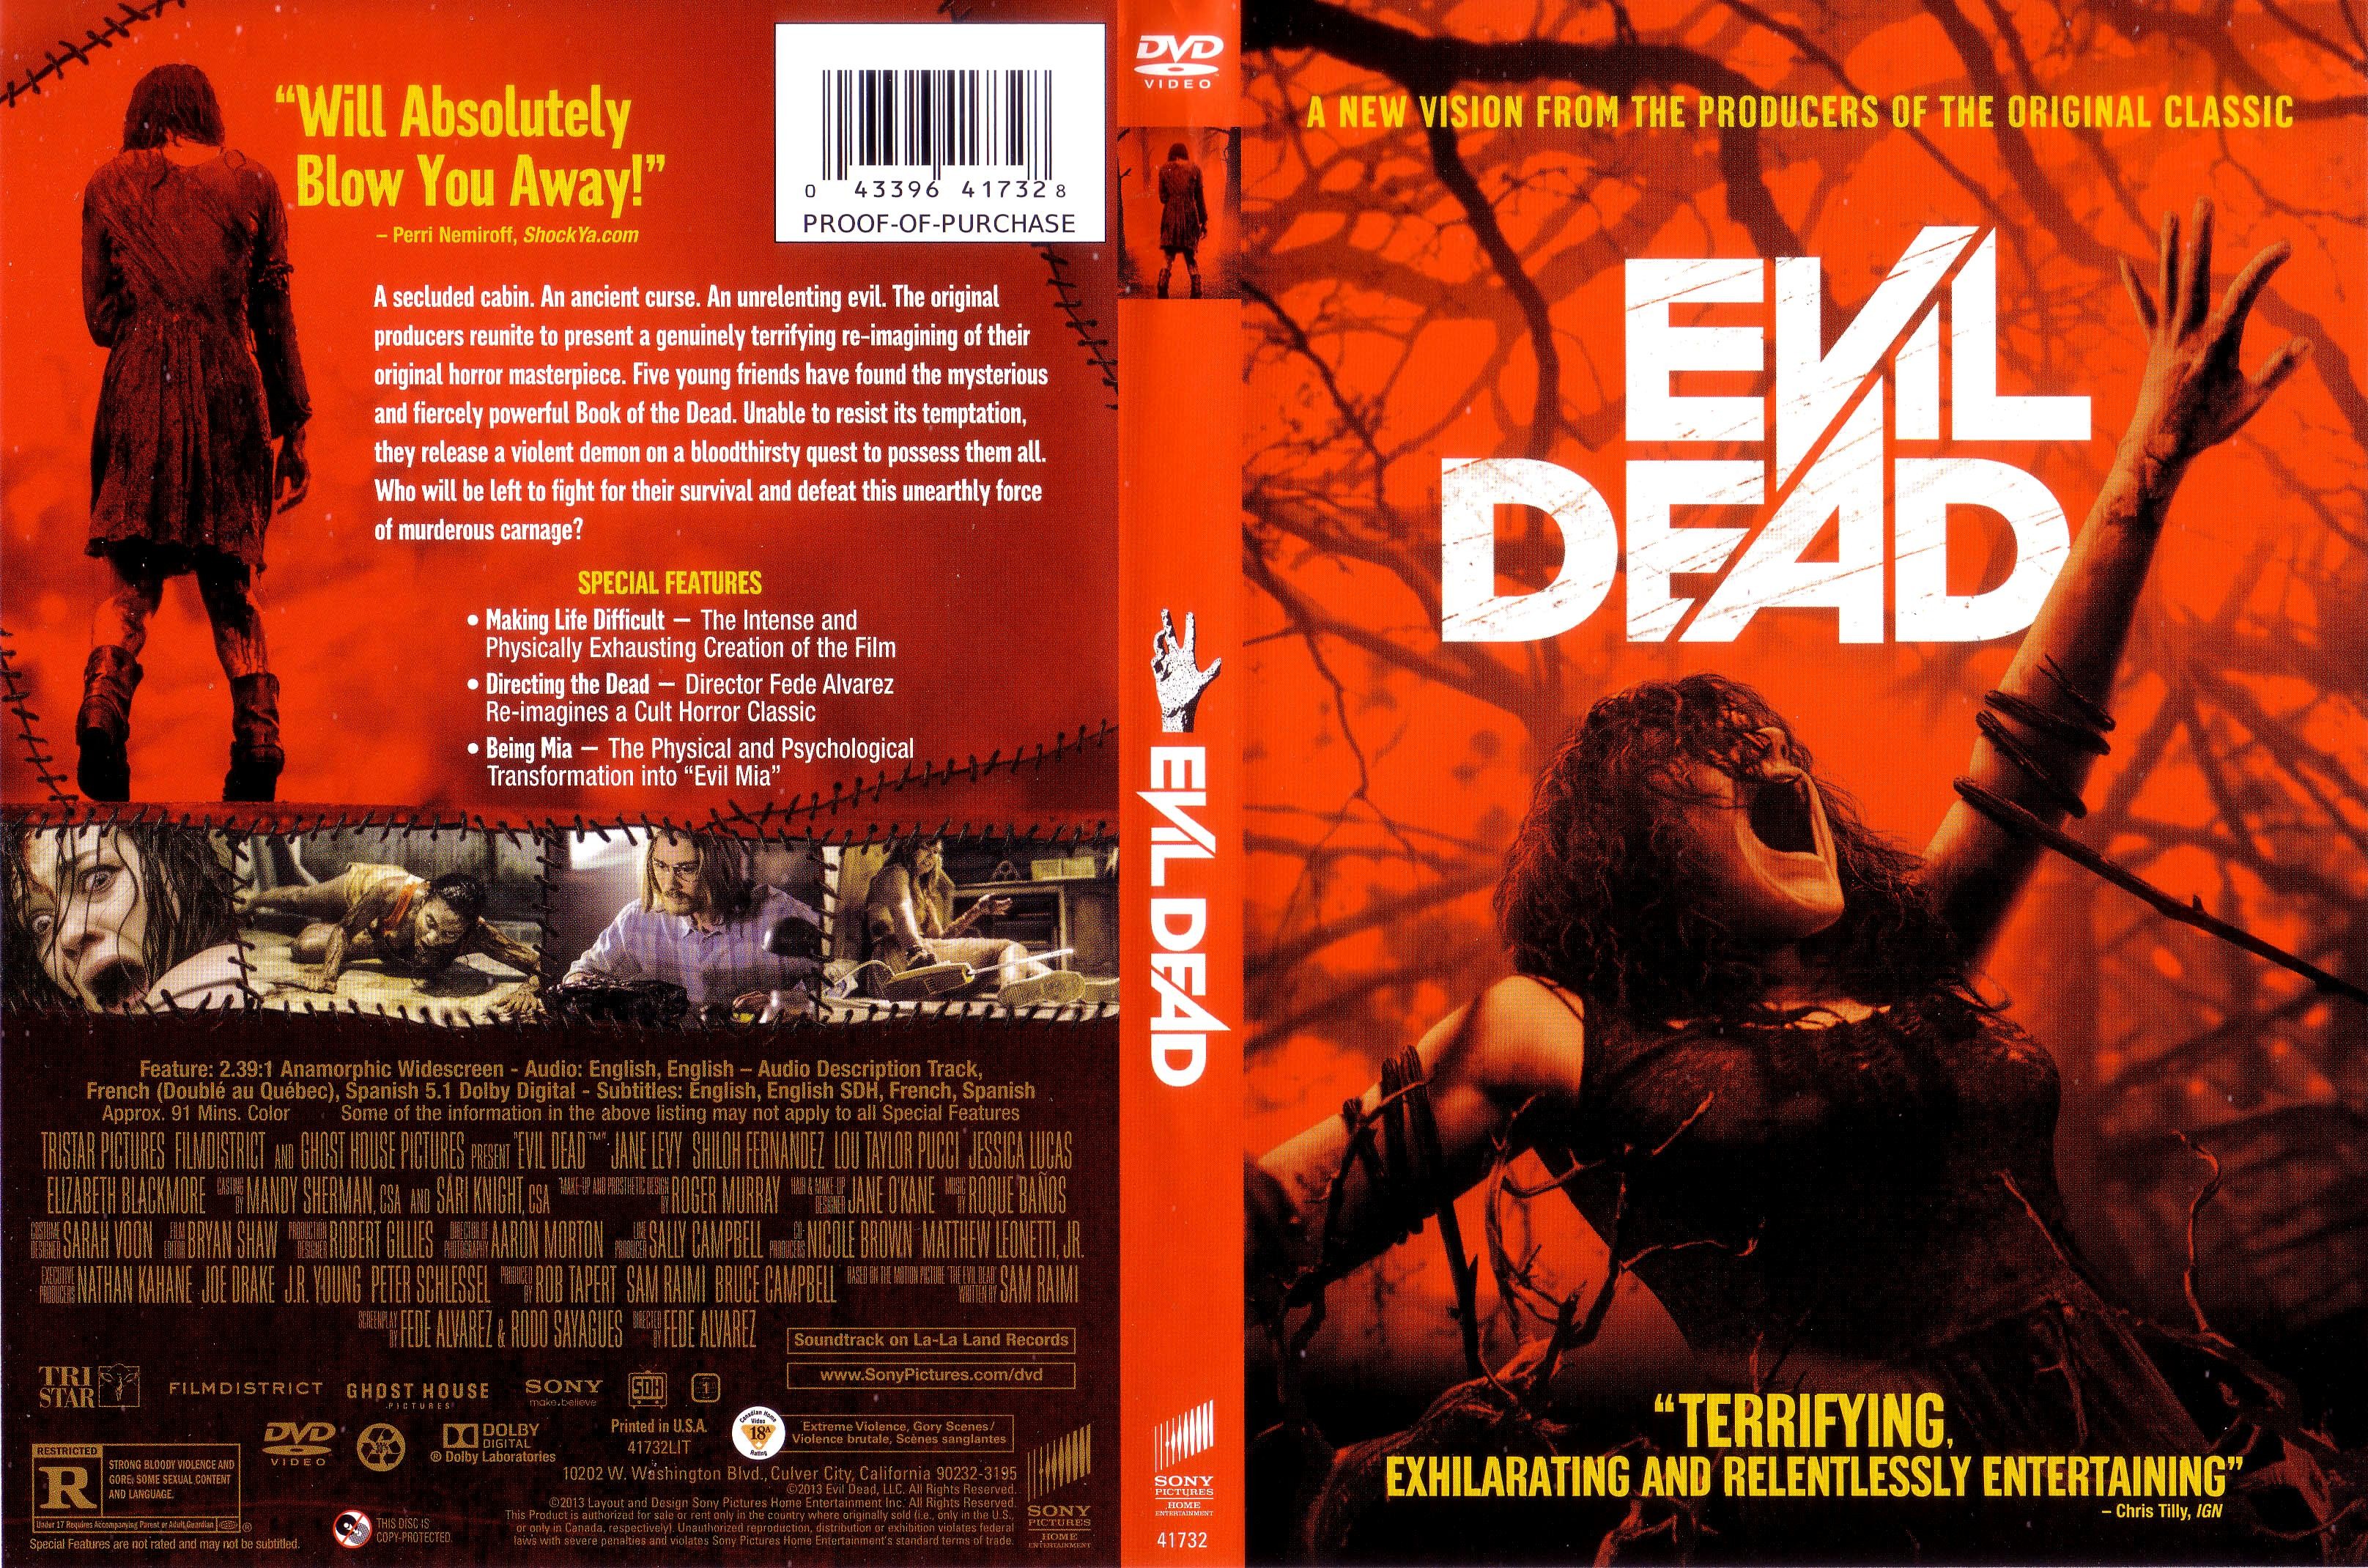 Evil Dead (2013) - IGN